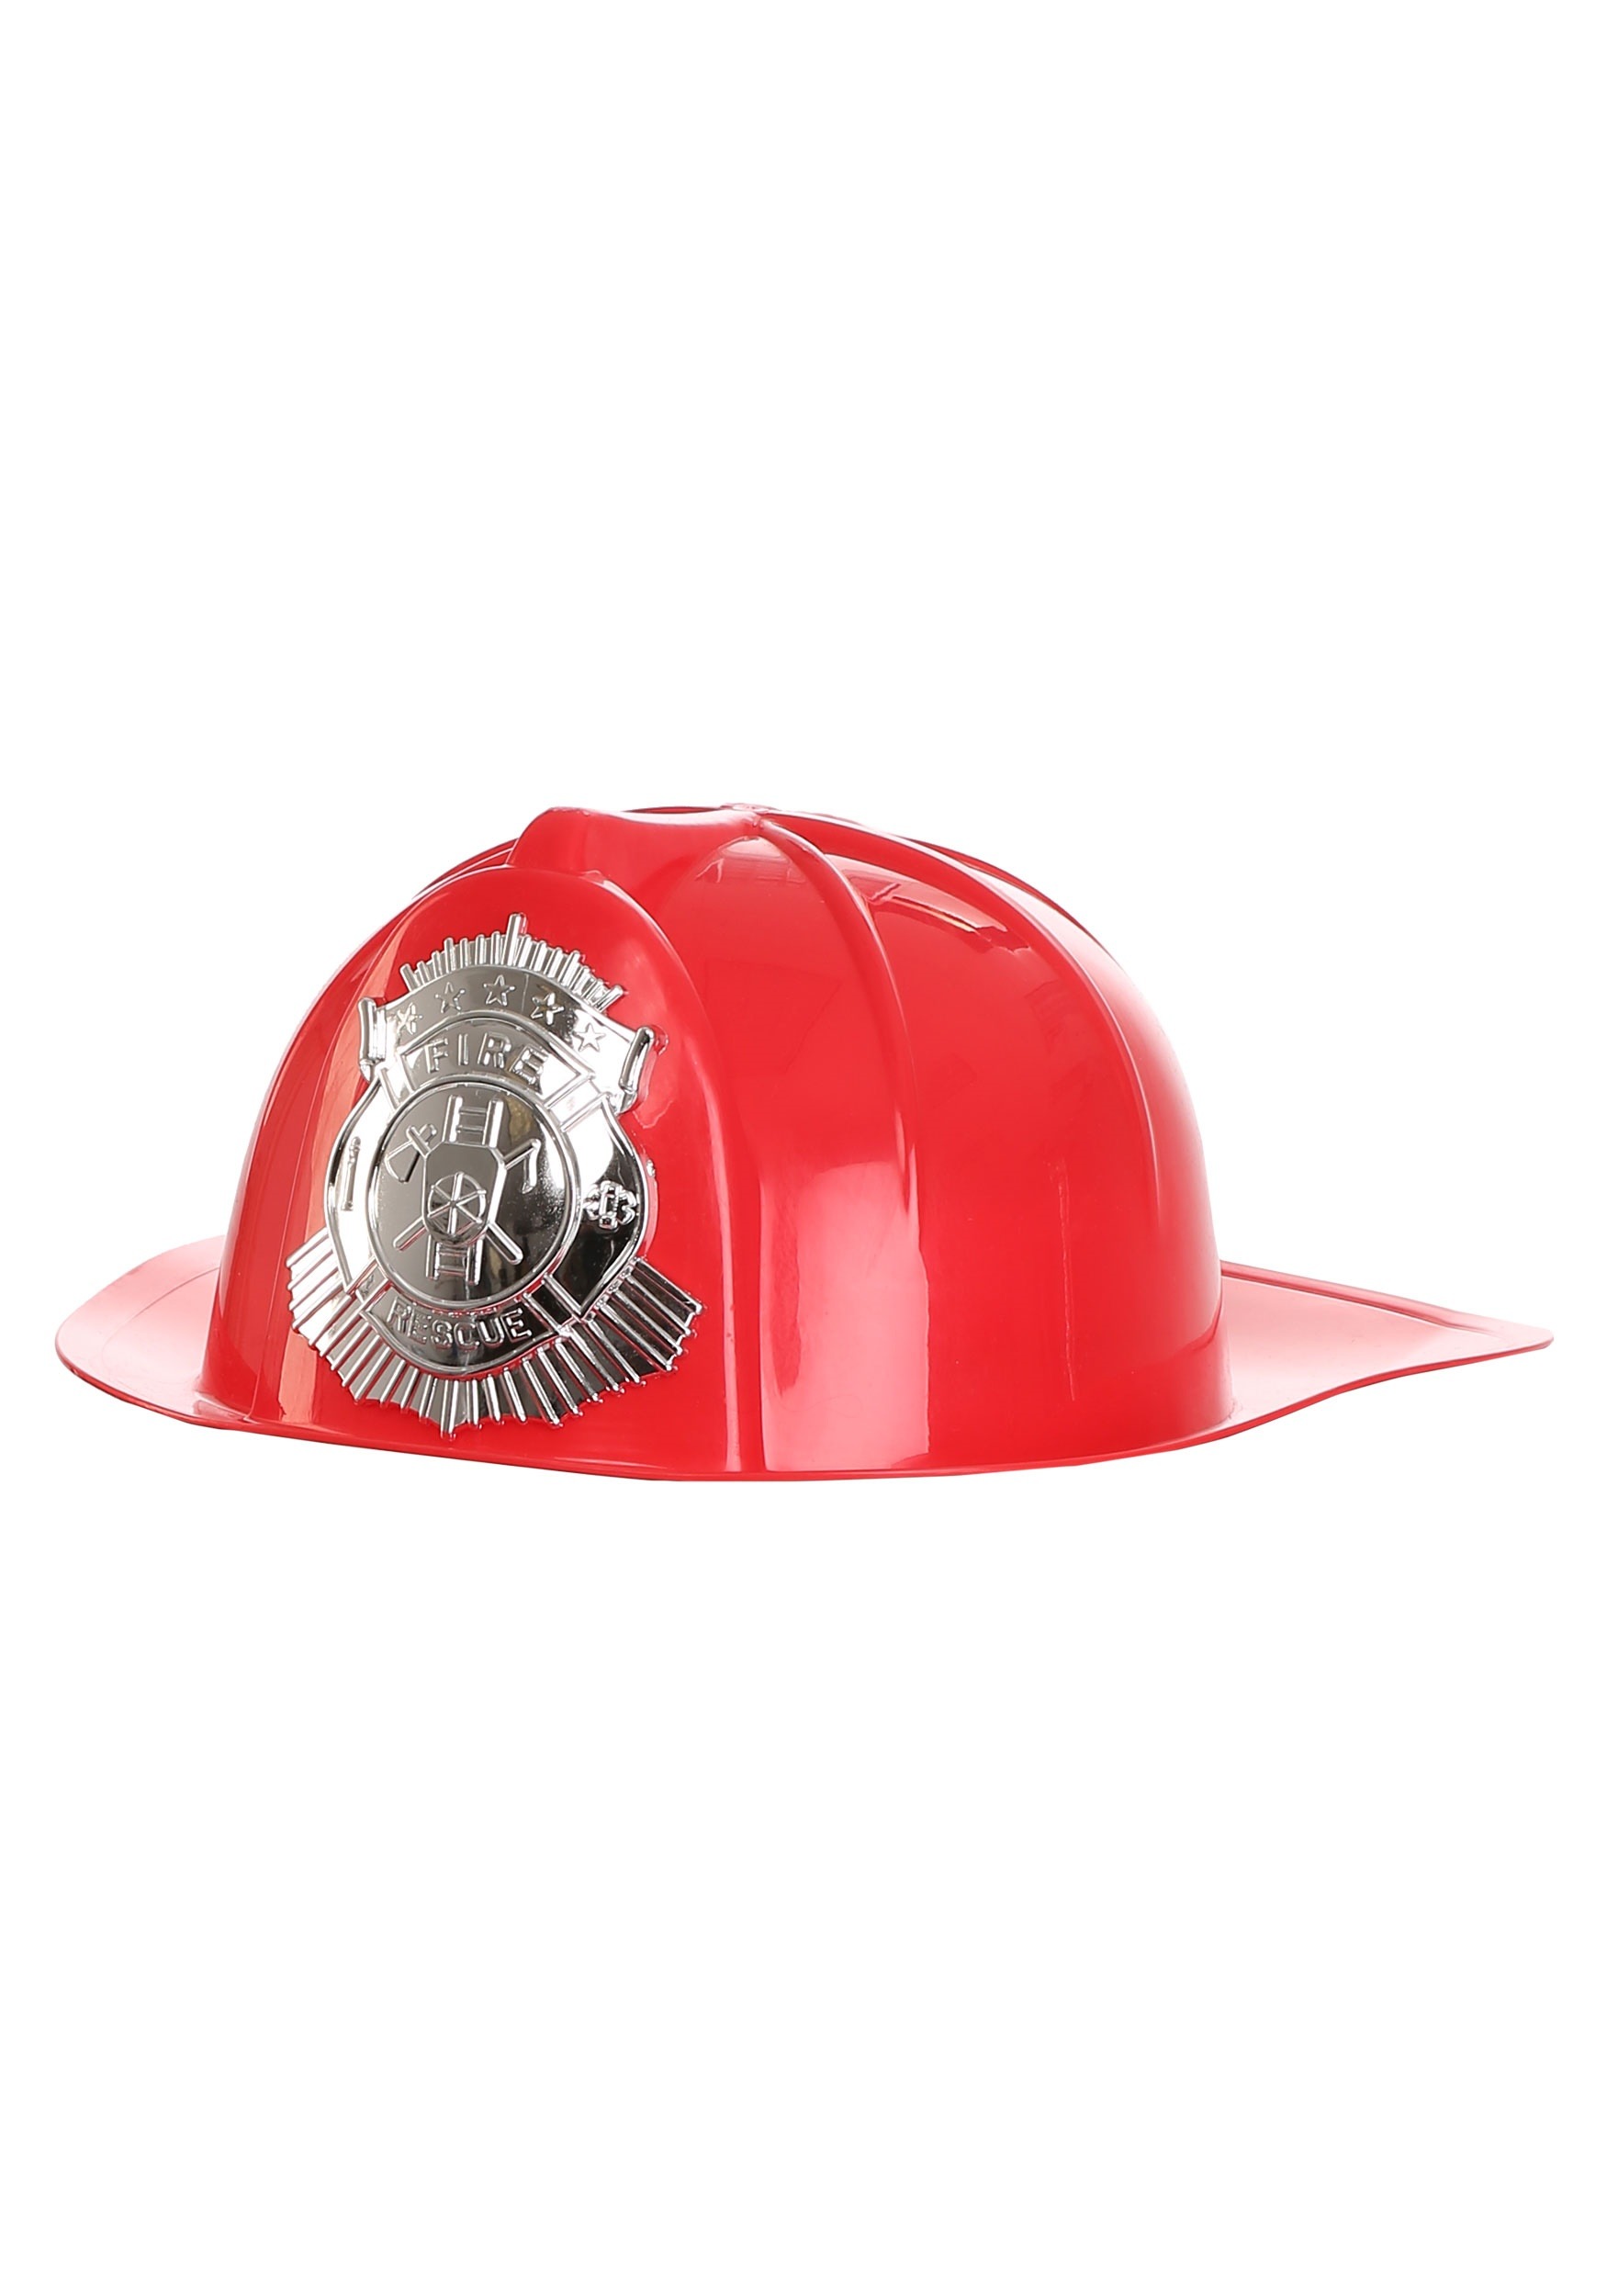 Deluxe Red Fireman’s Helmet